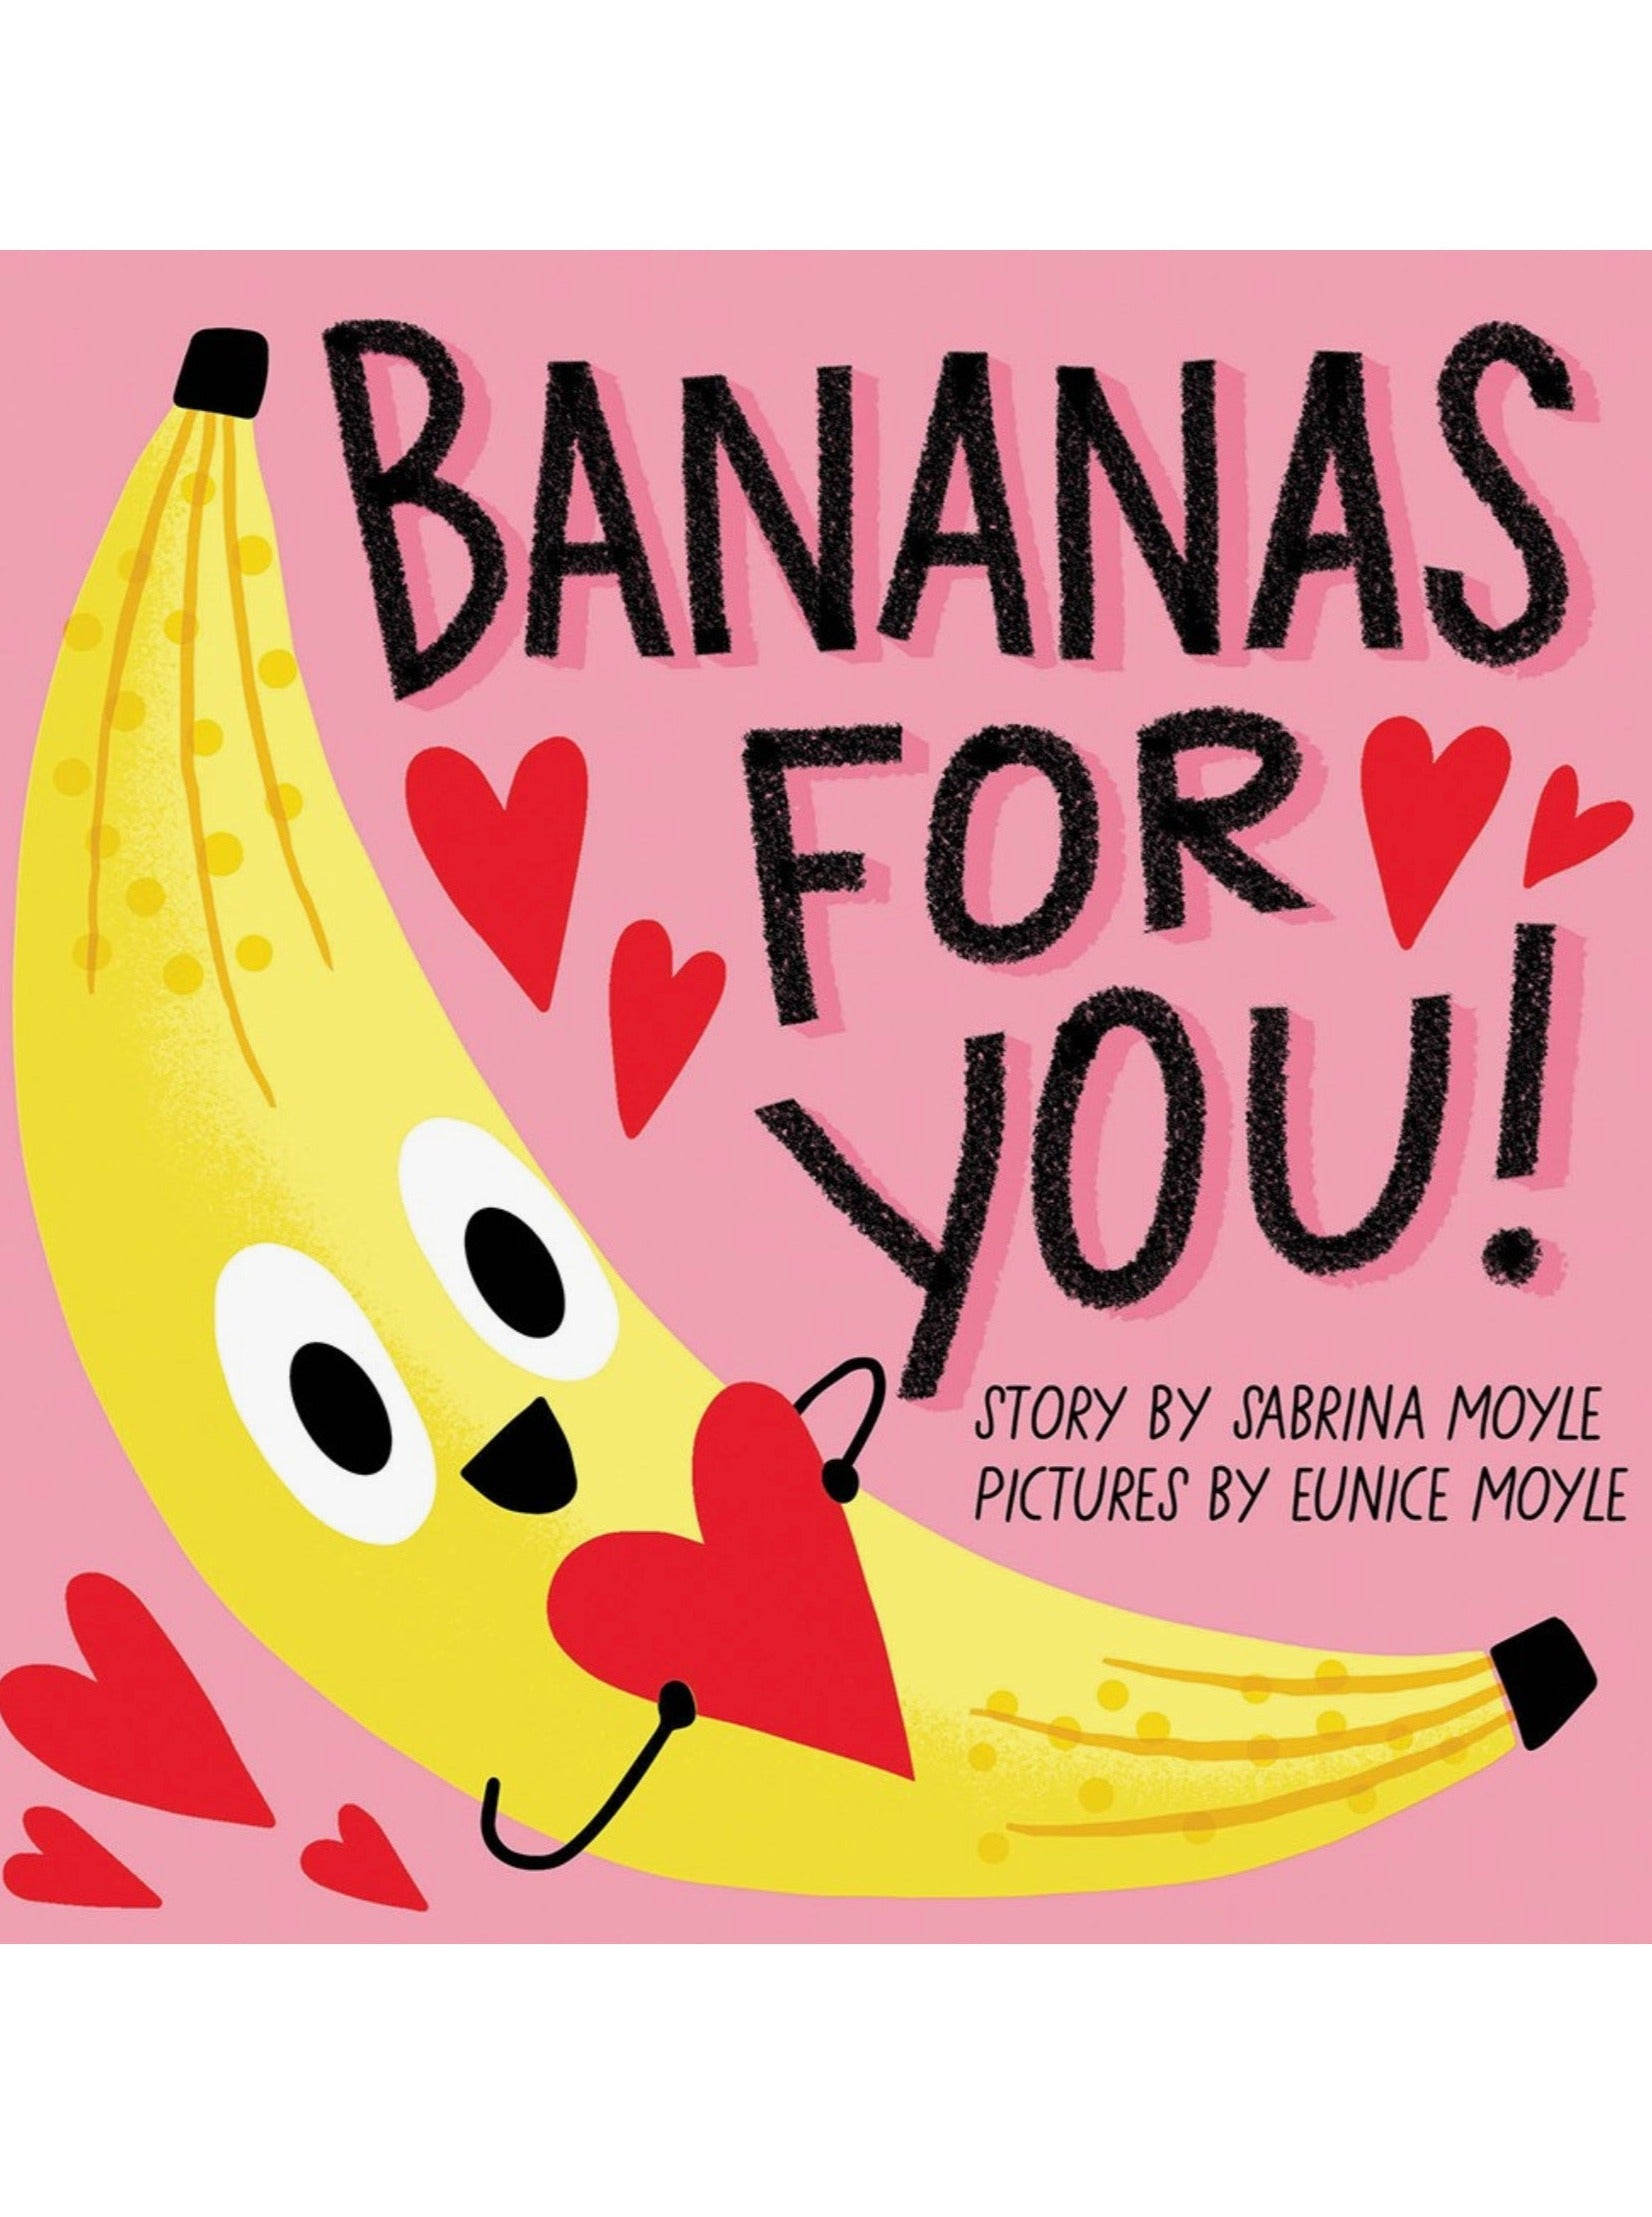 bananas for you!